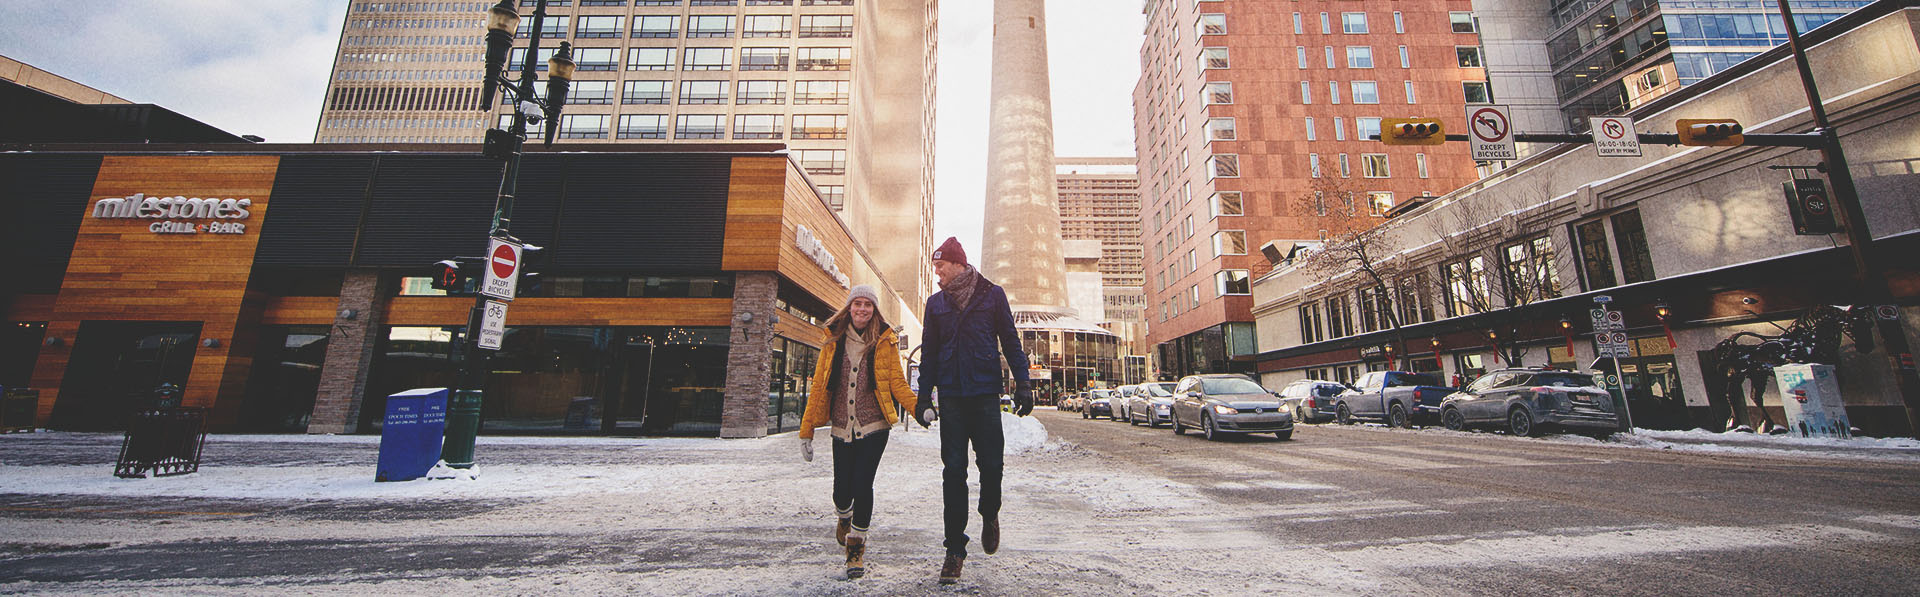 Couple walking along Stephen Avenue in winter